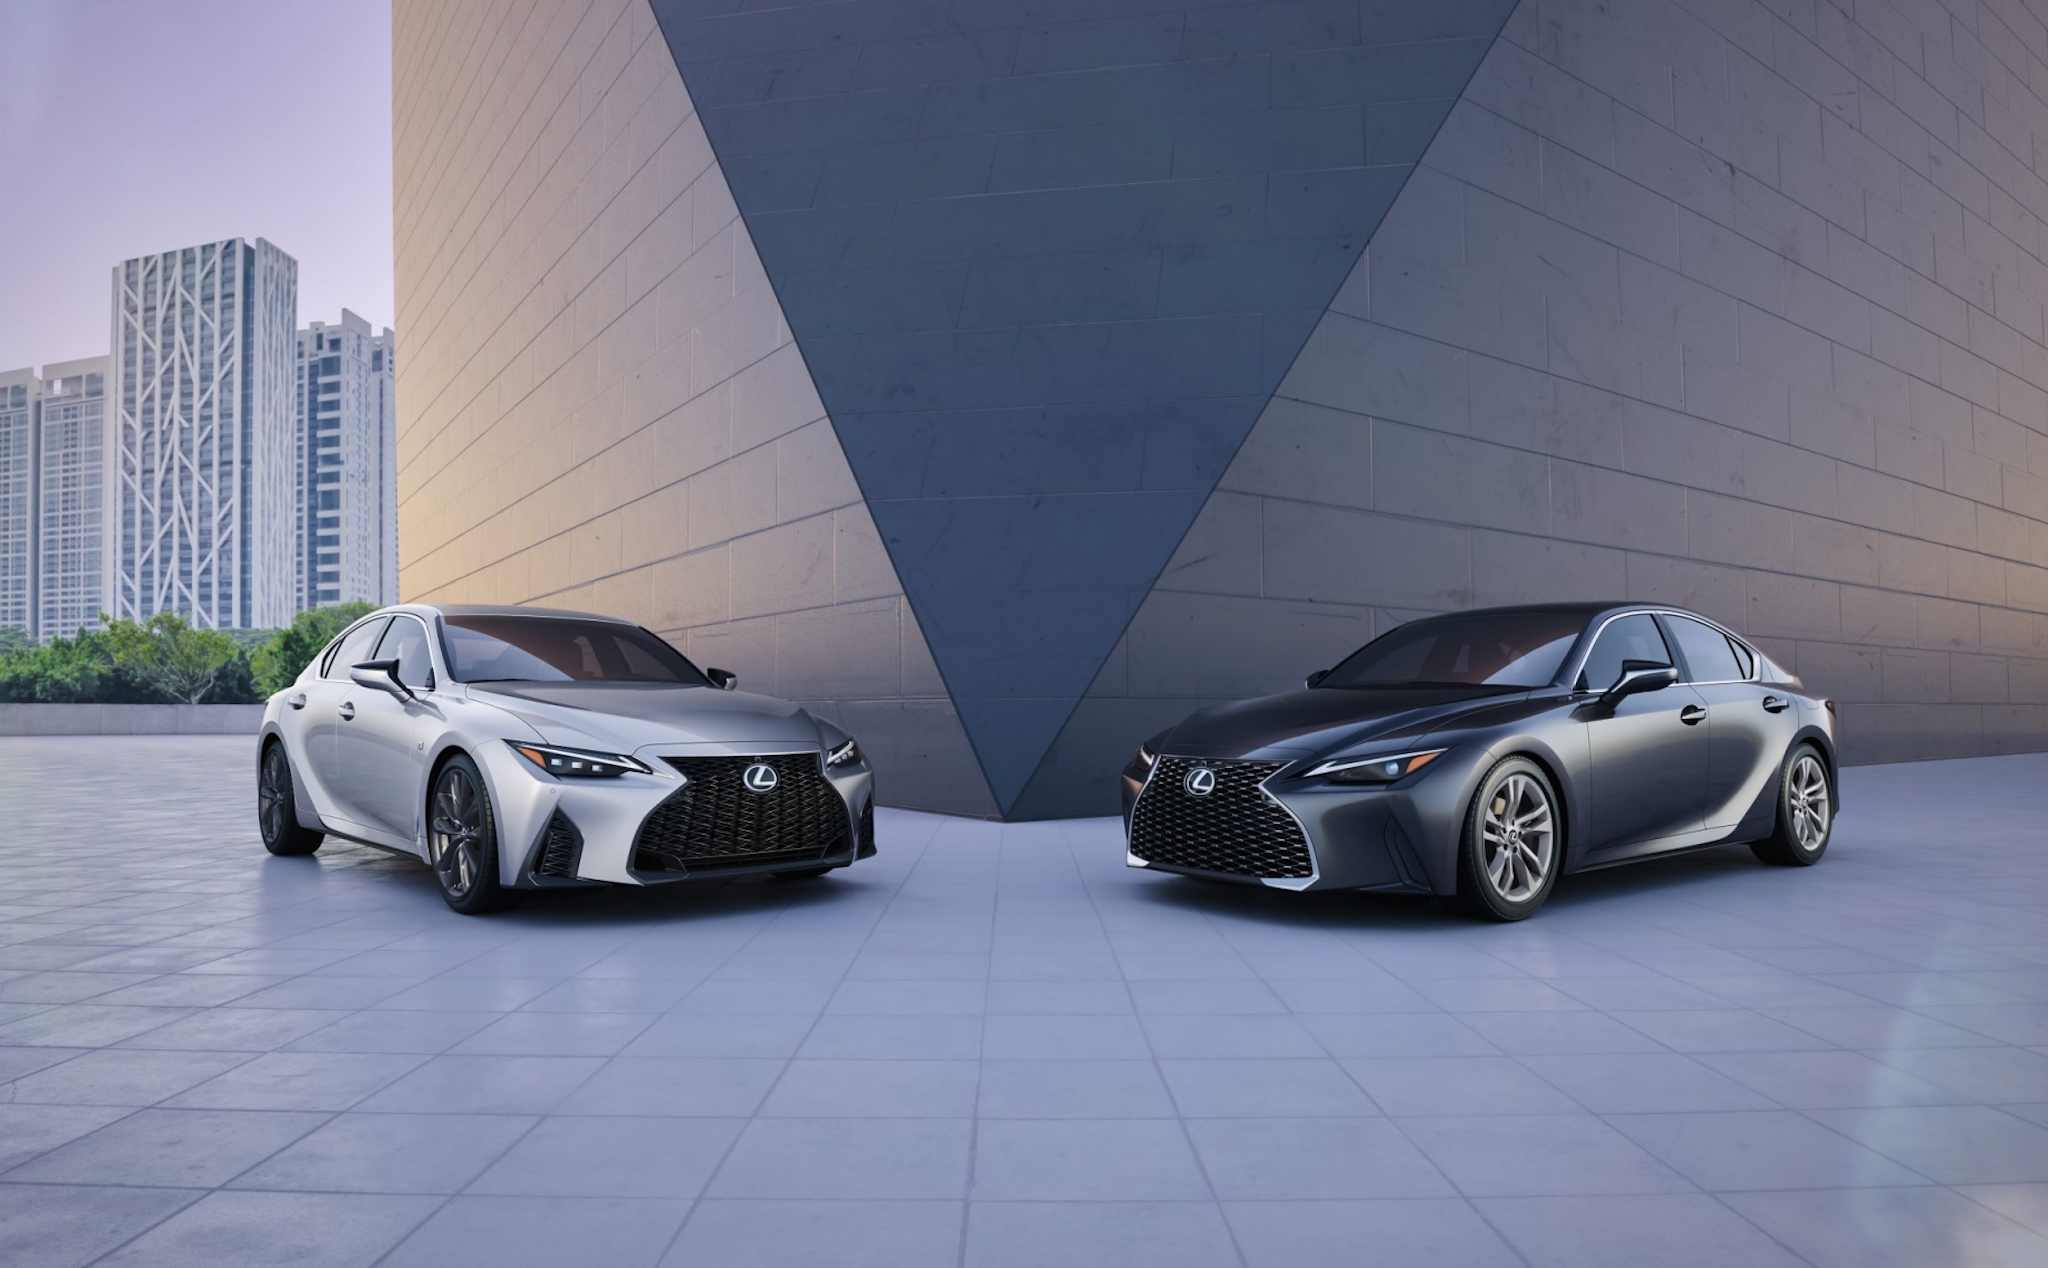 Chi tiết Lexus IS 2021: Ngoại thất cá tính, nội thất thực dụng, nâng cấp khả năng vận hành